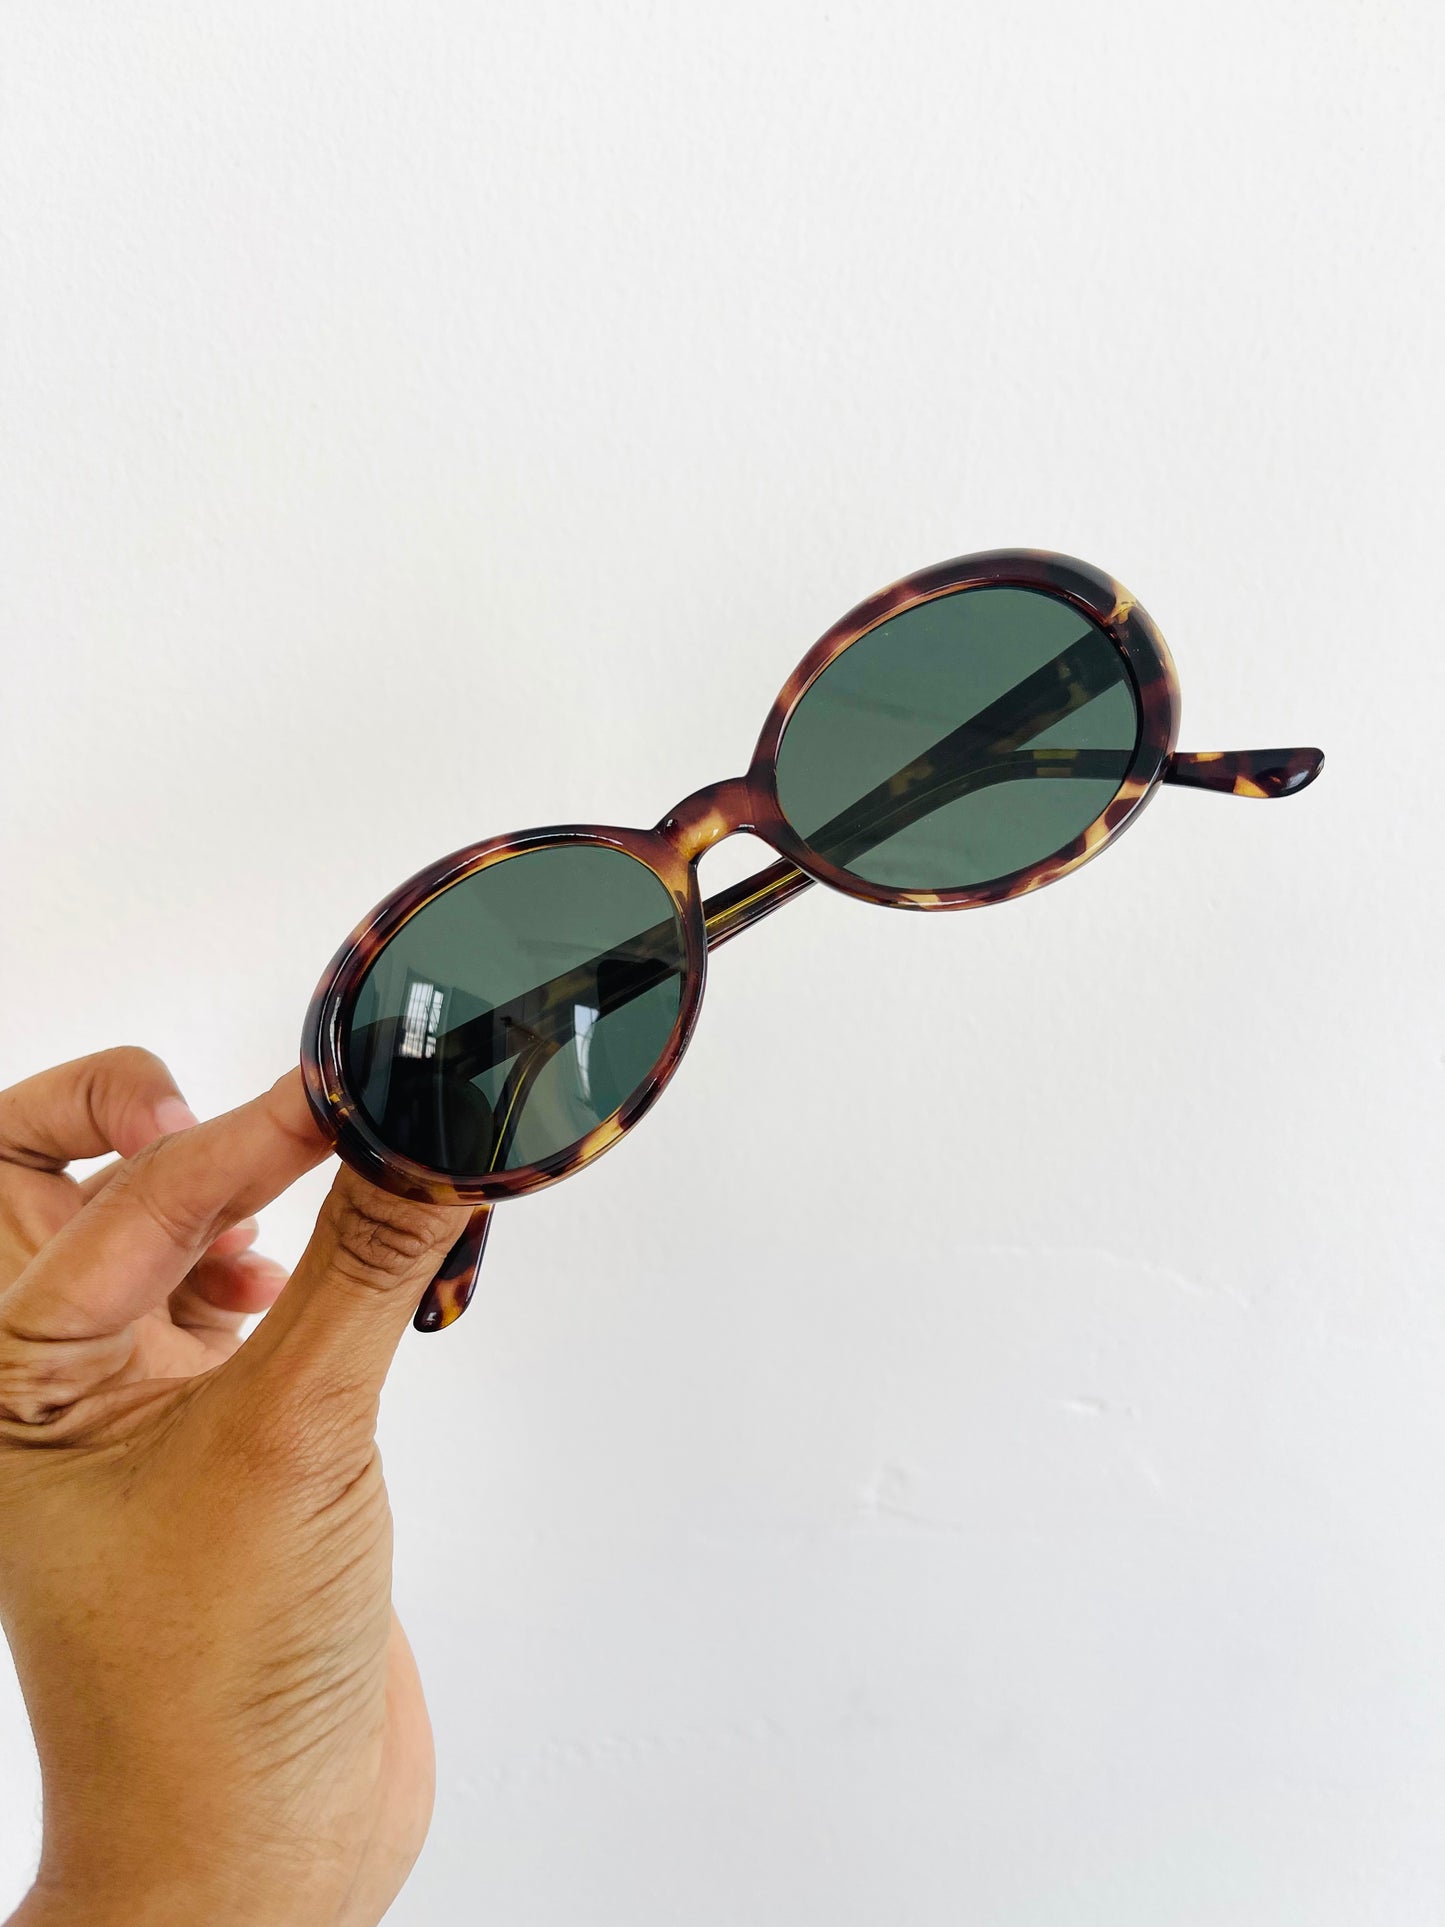 Vintage Oval Sunglasses - Tortoise